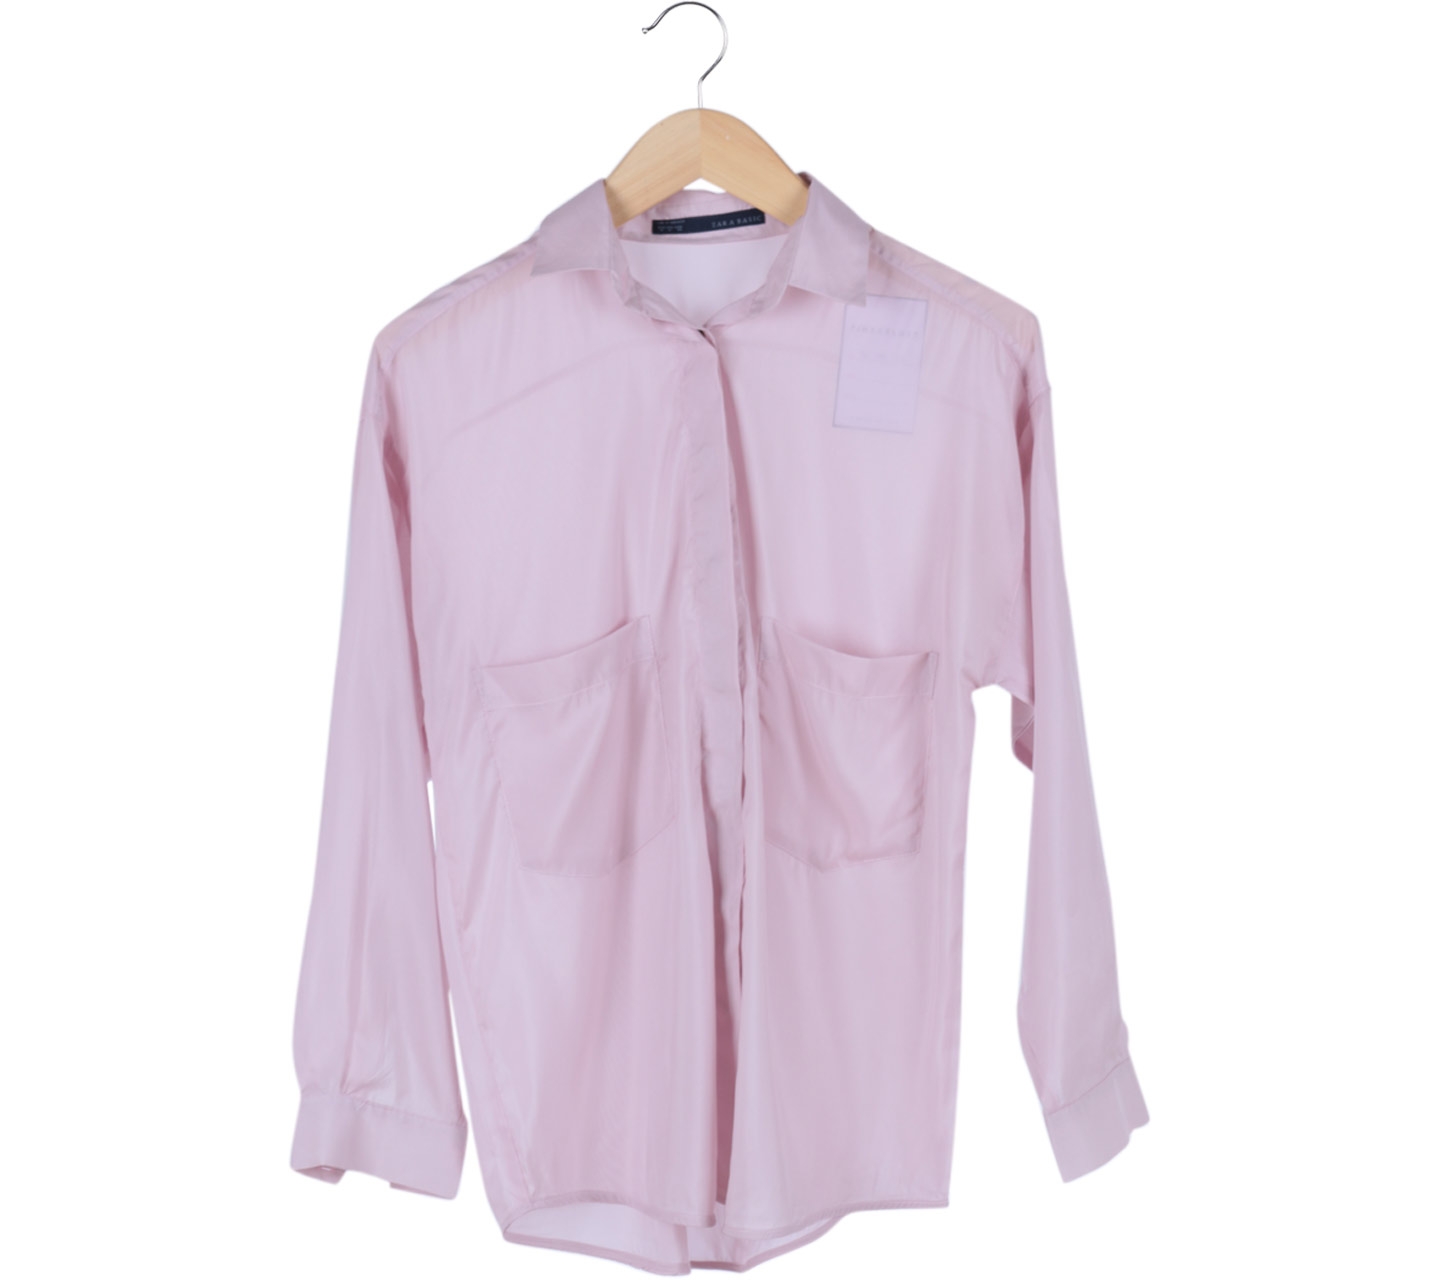 Zara Pink Pocket Shirt